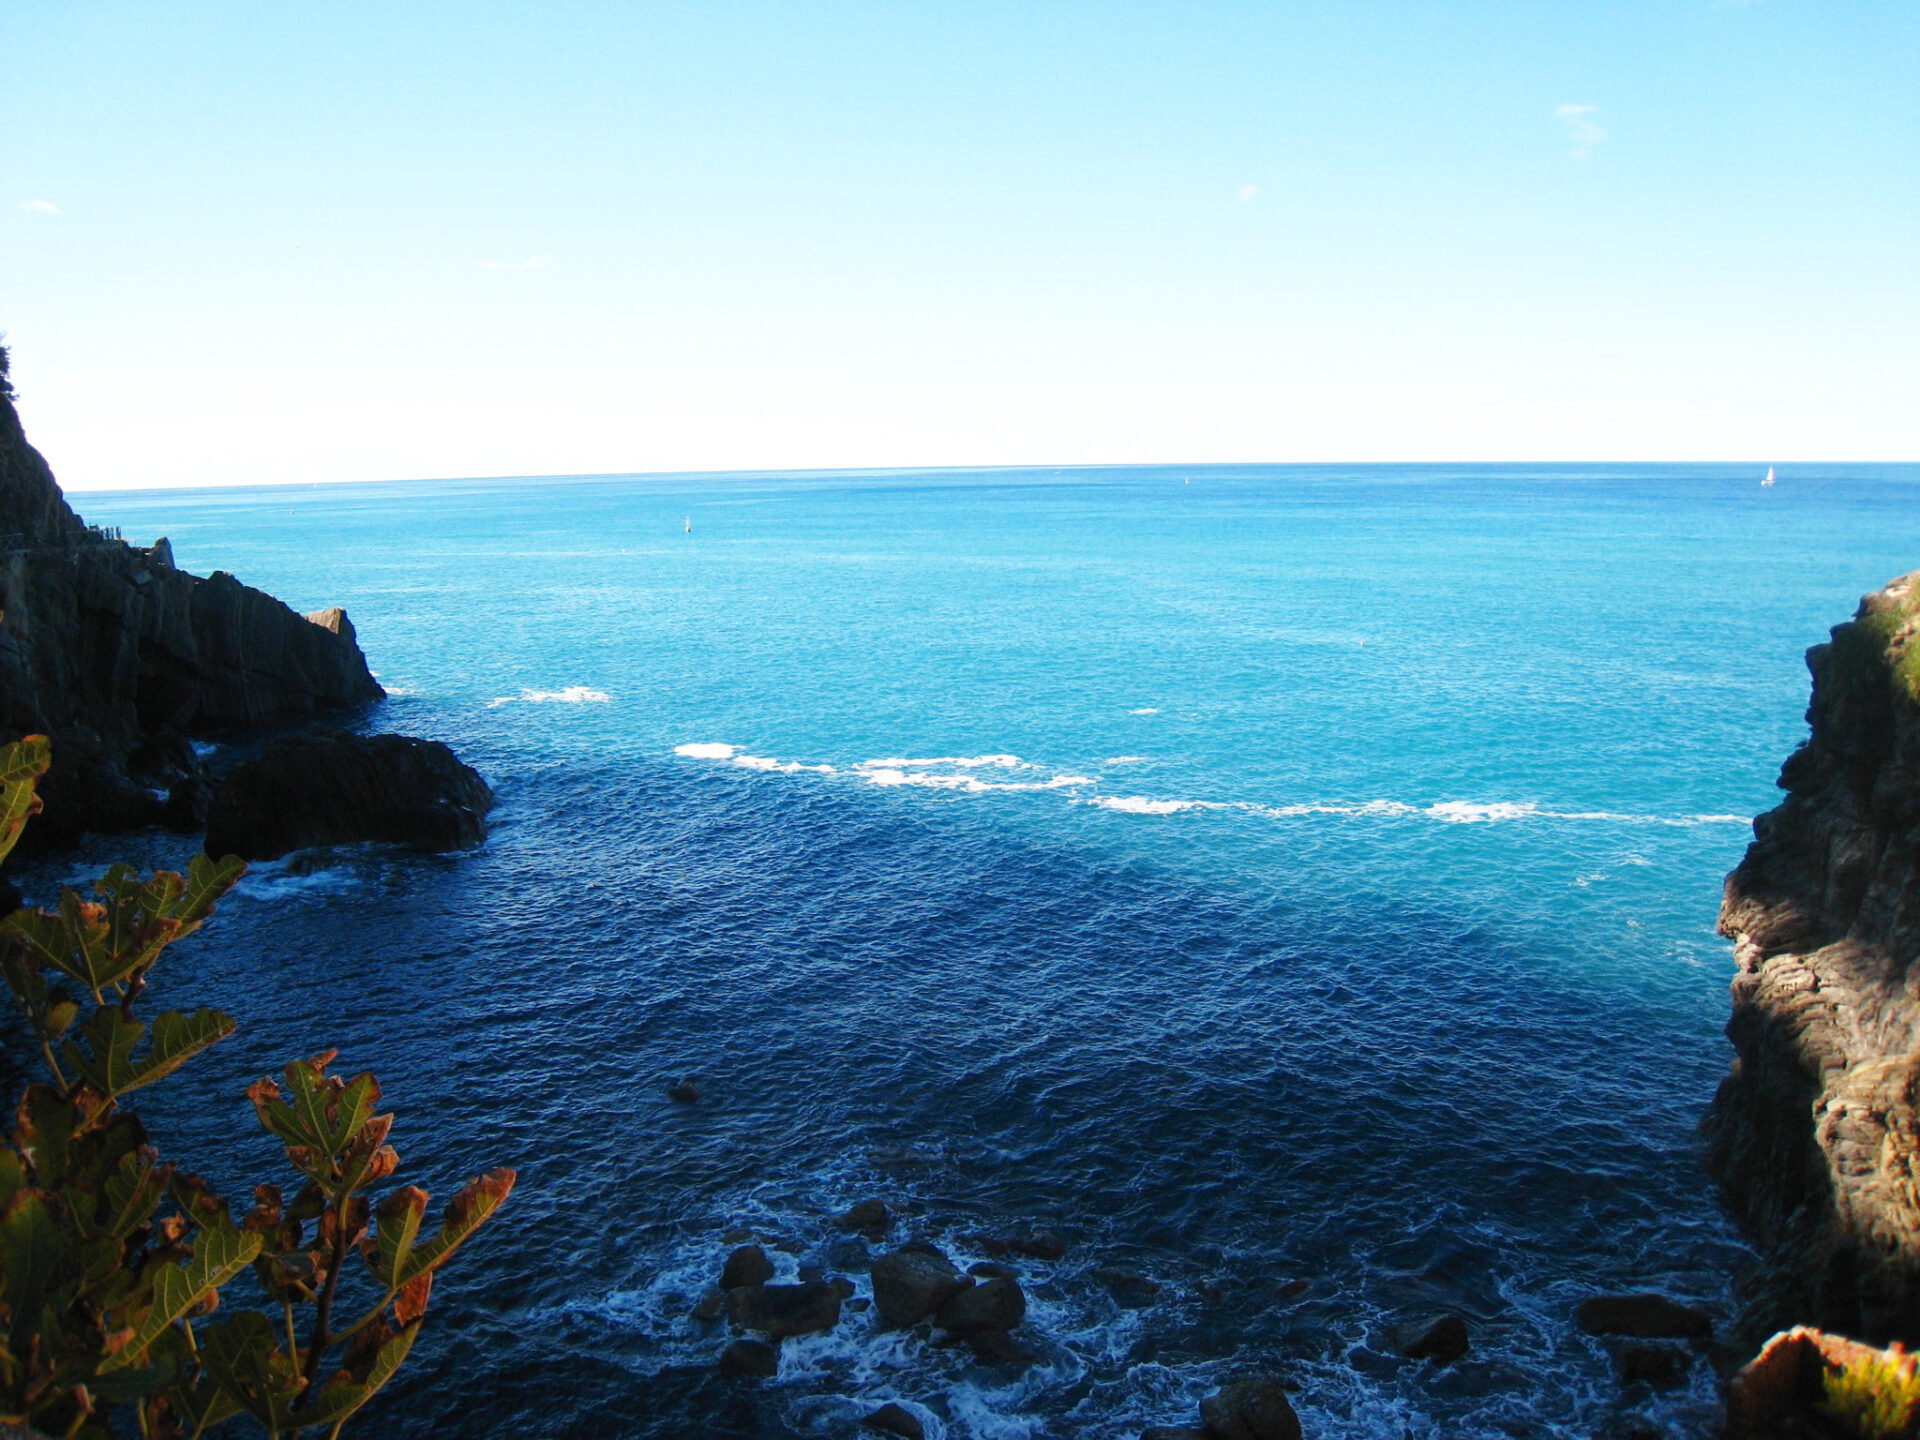 リオマッジョーレの青い海